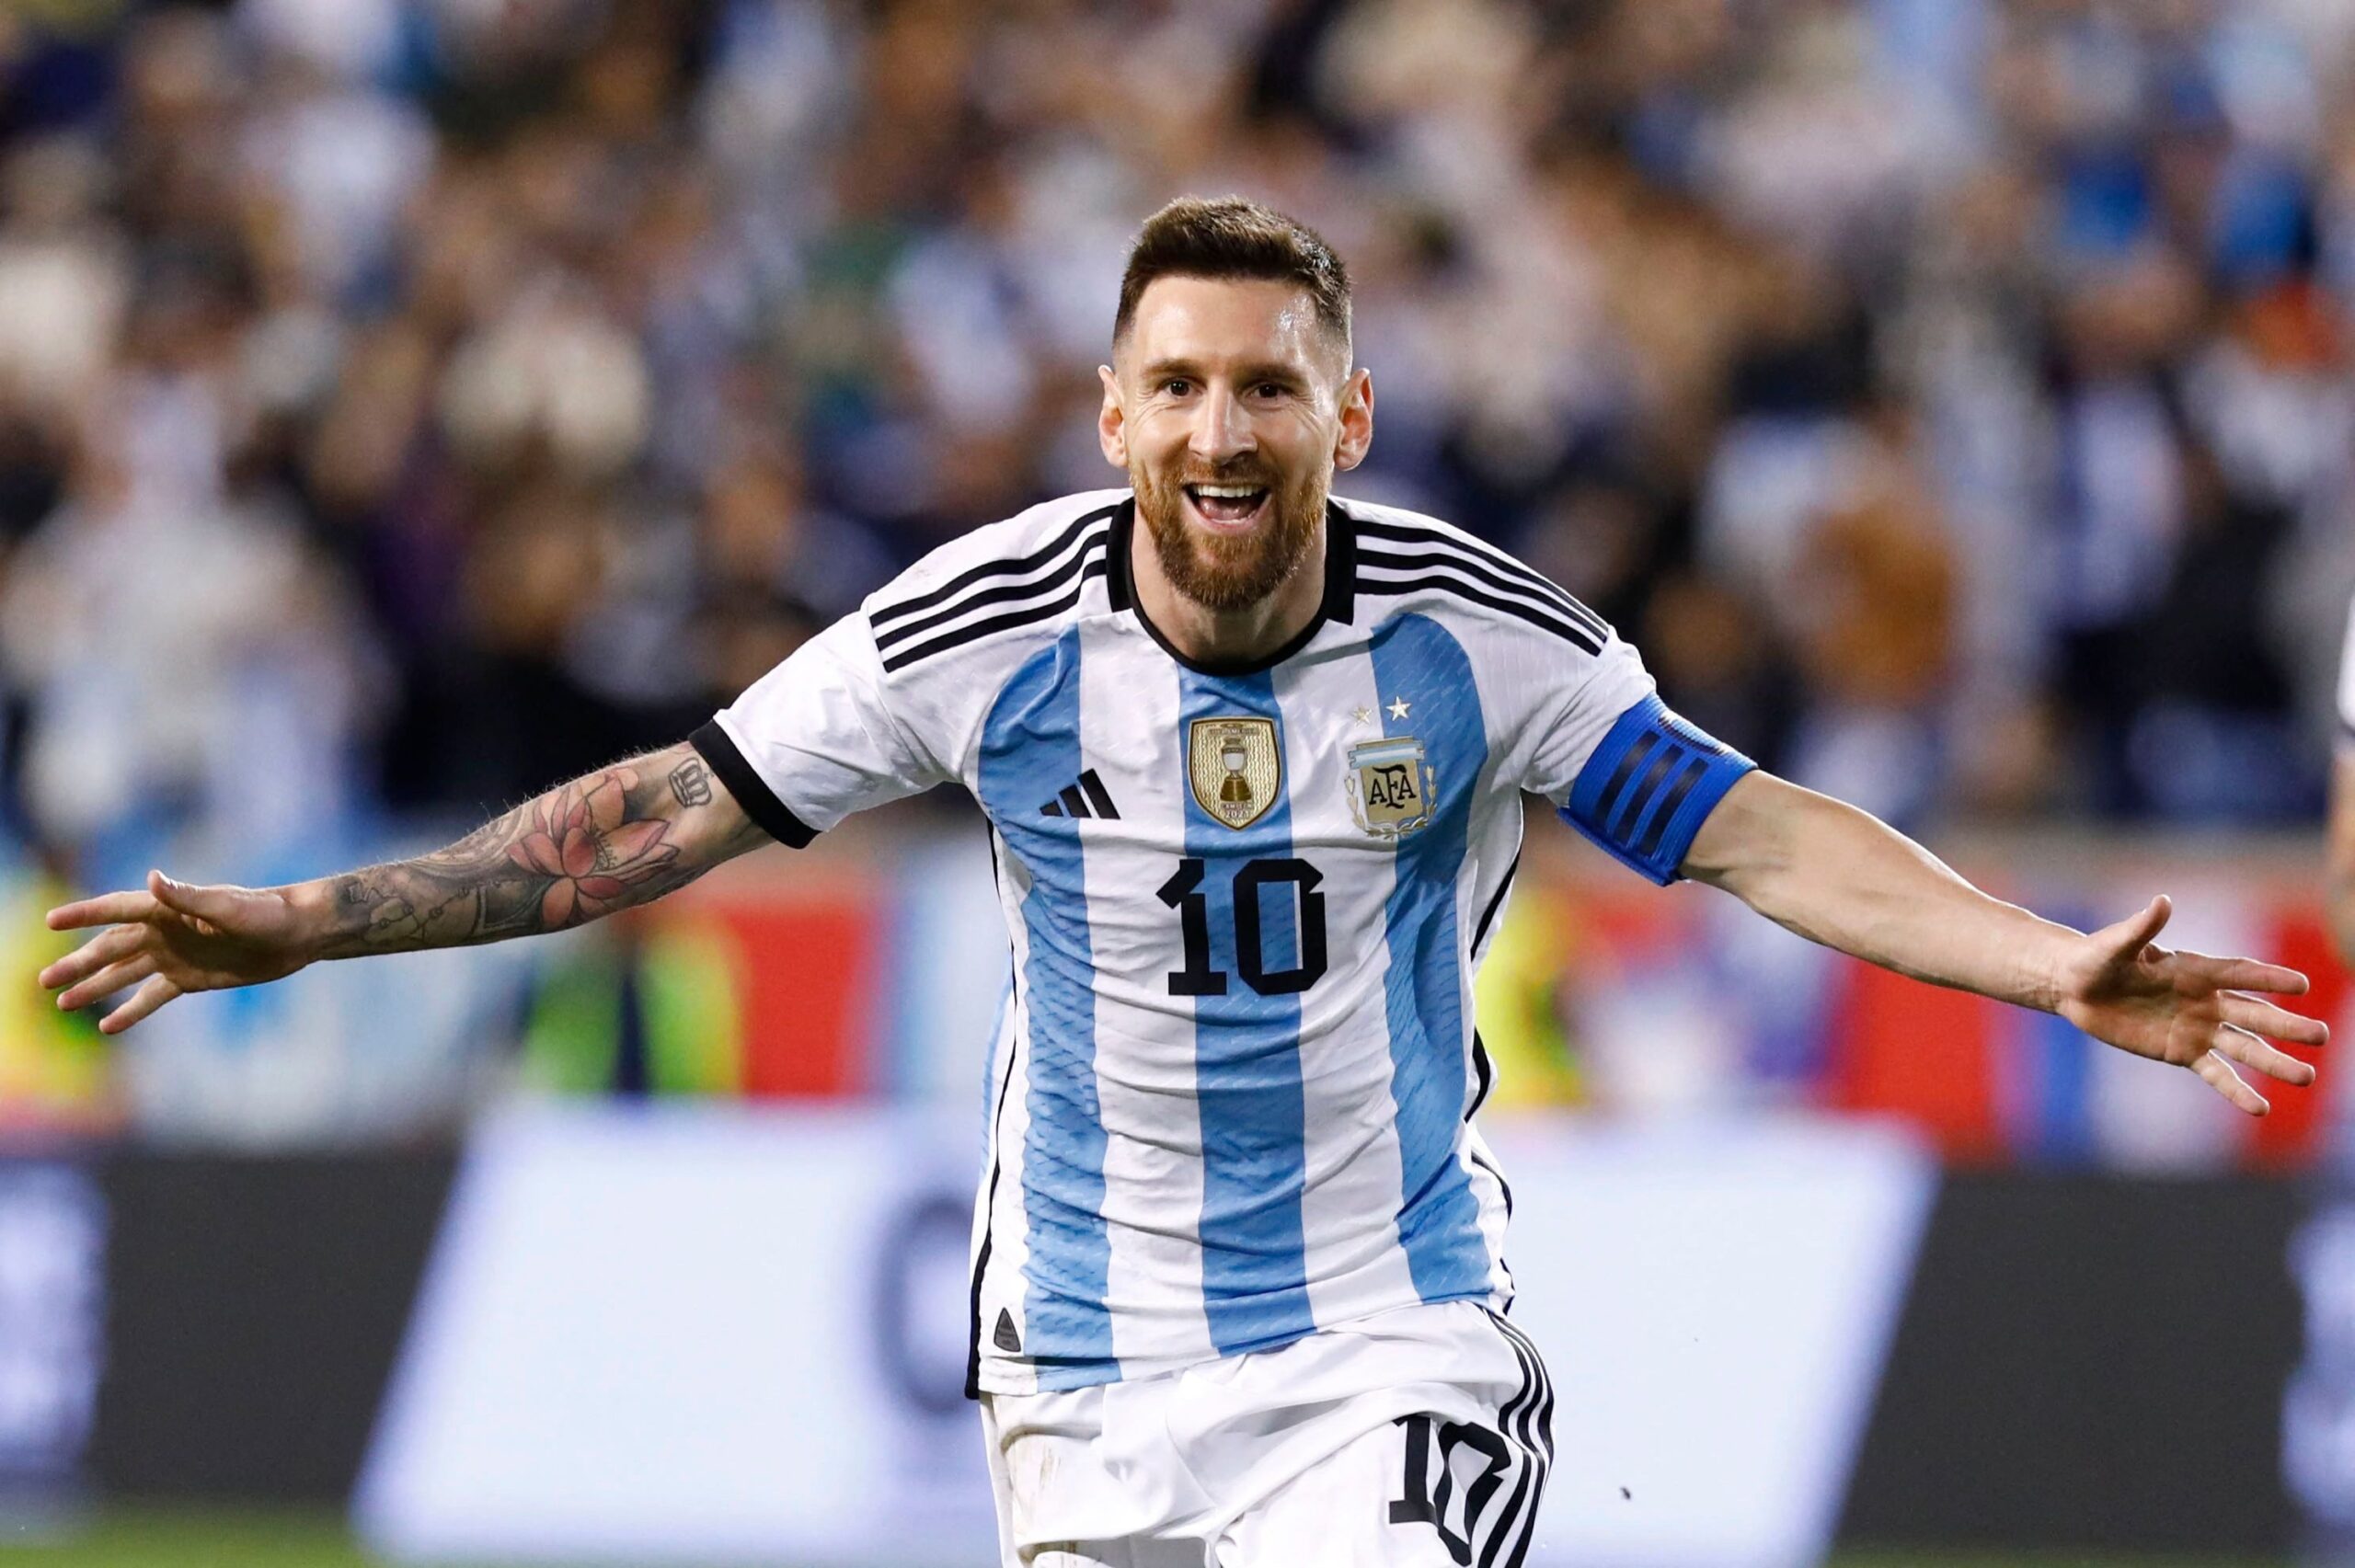 Confirmaron una serie documental sobre Lionel Messi